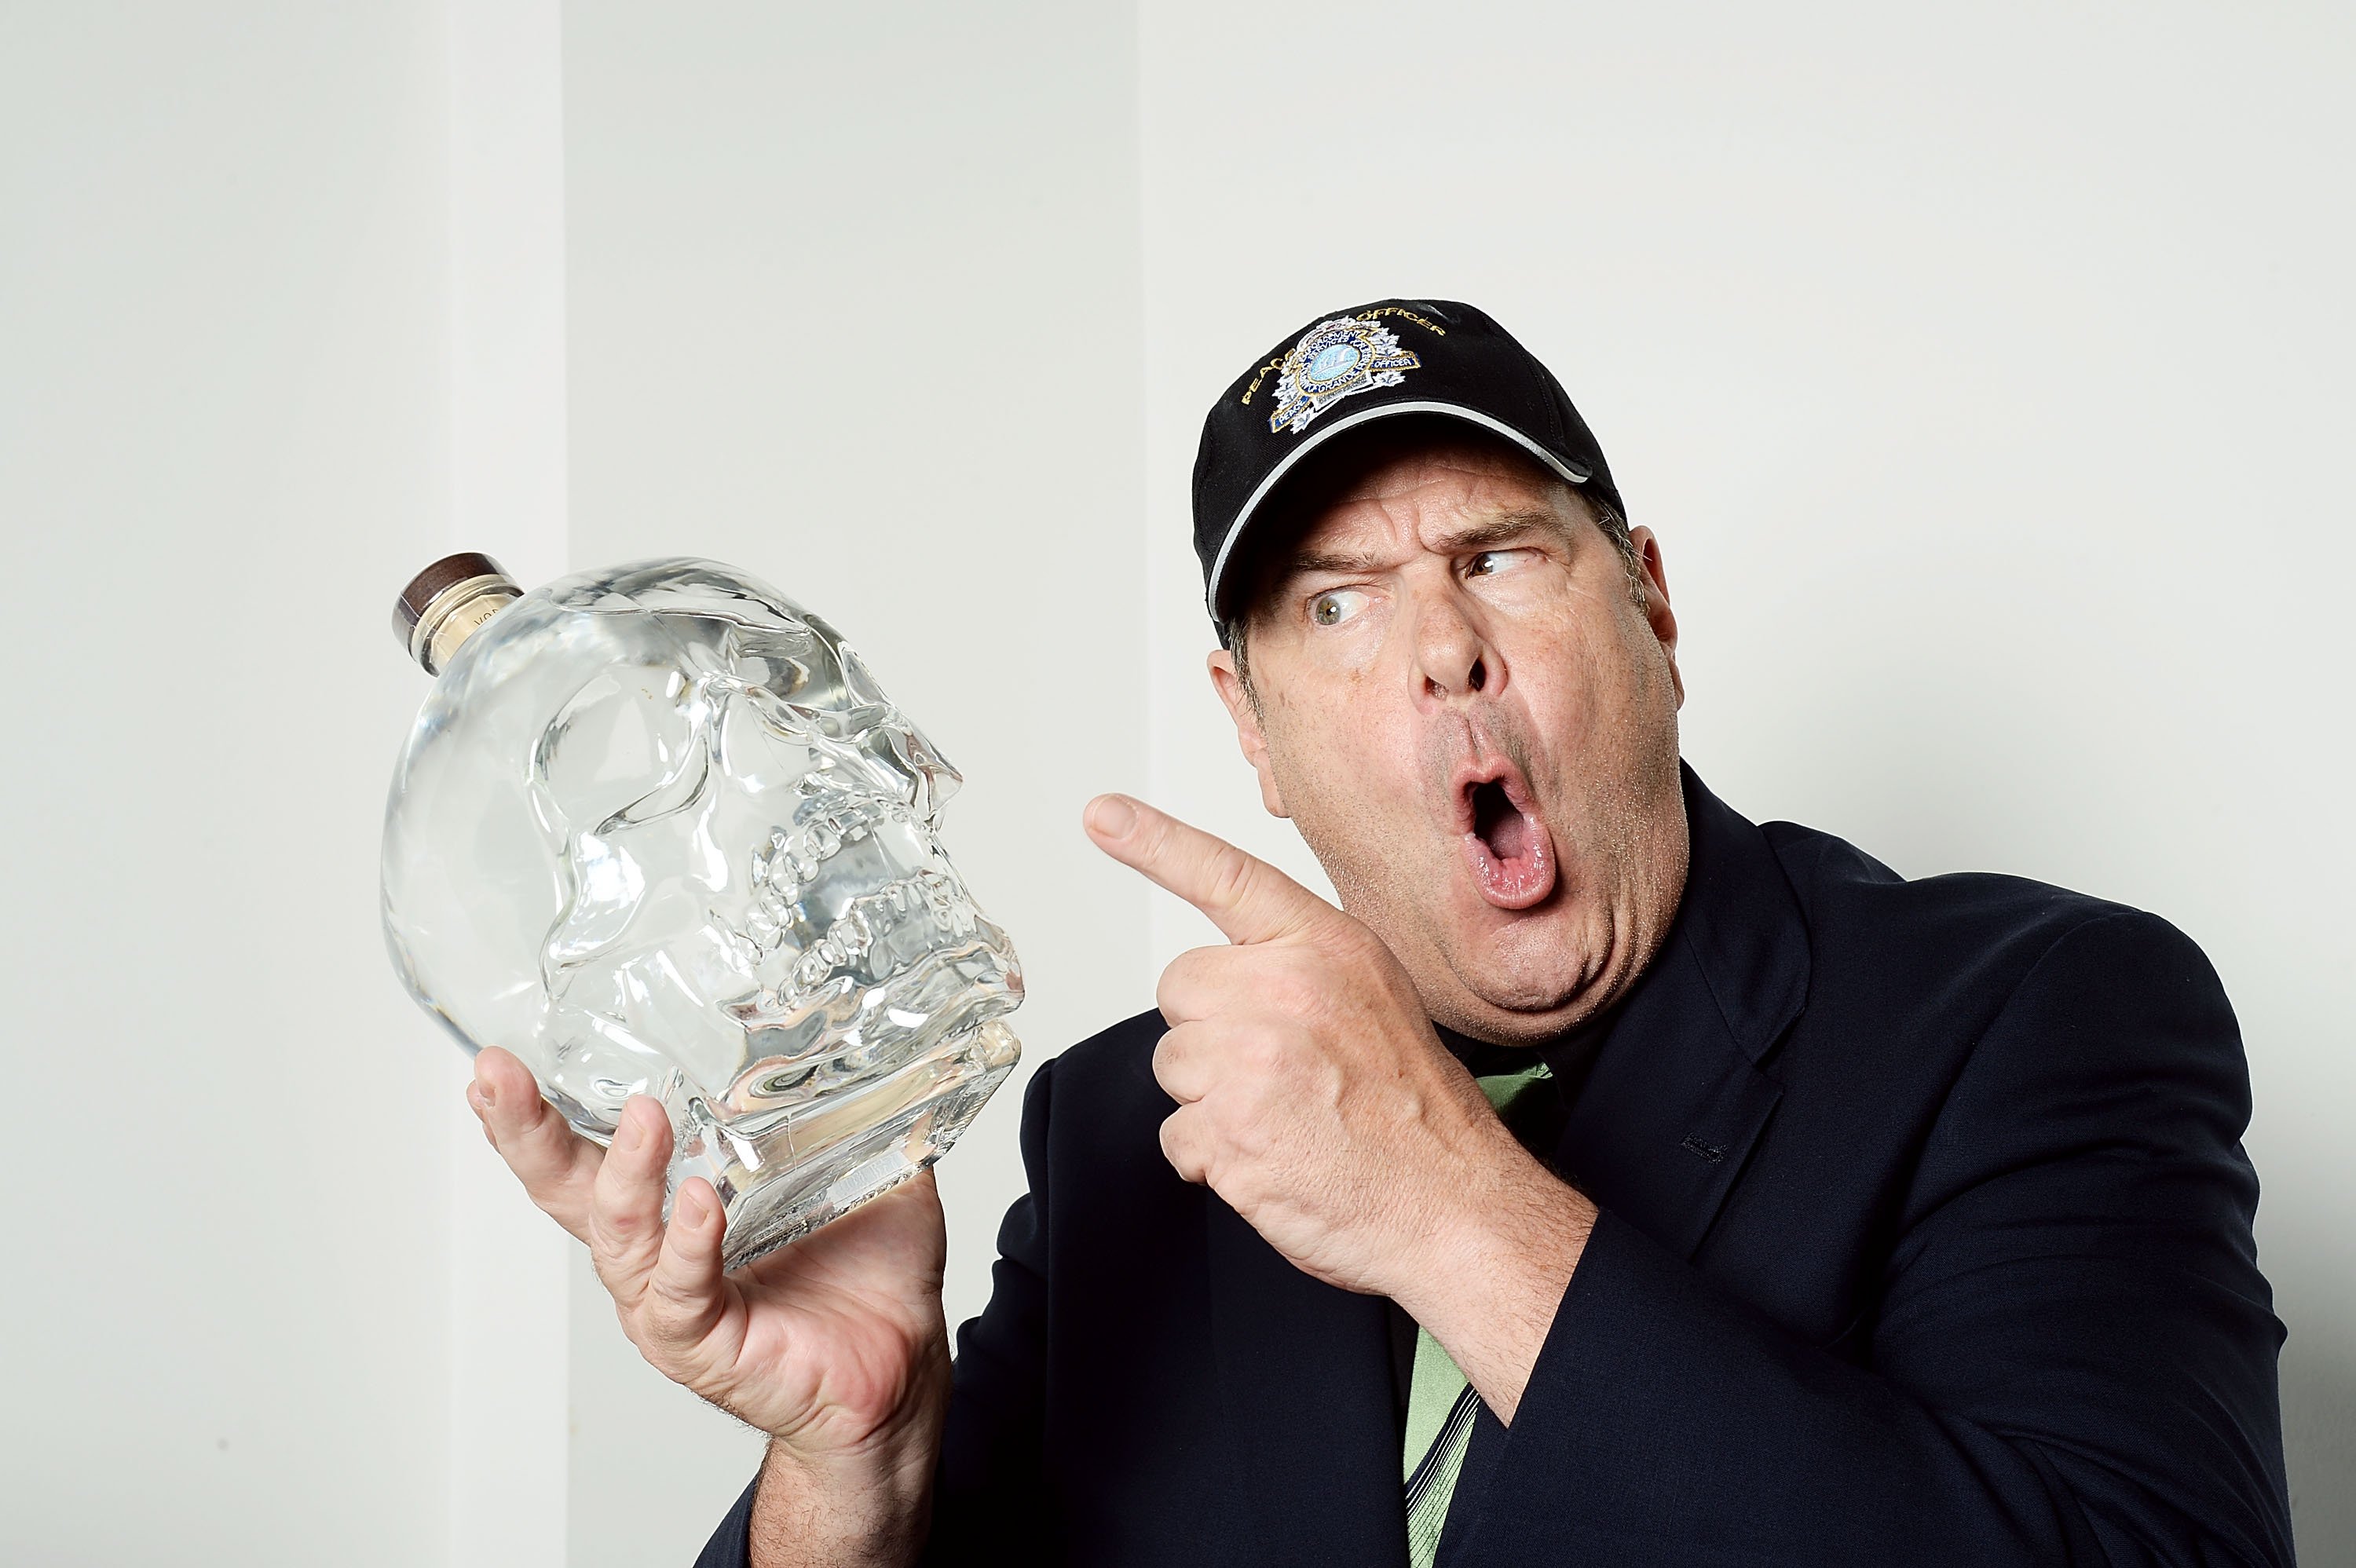 Dan Aykroyd posing with a bottle of vodka